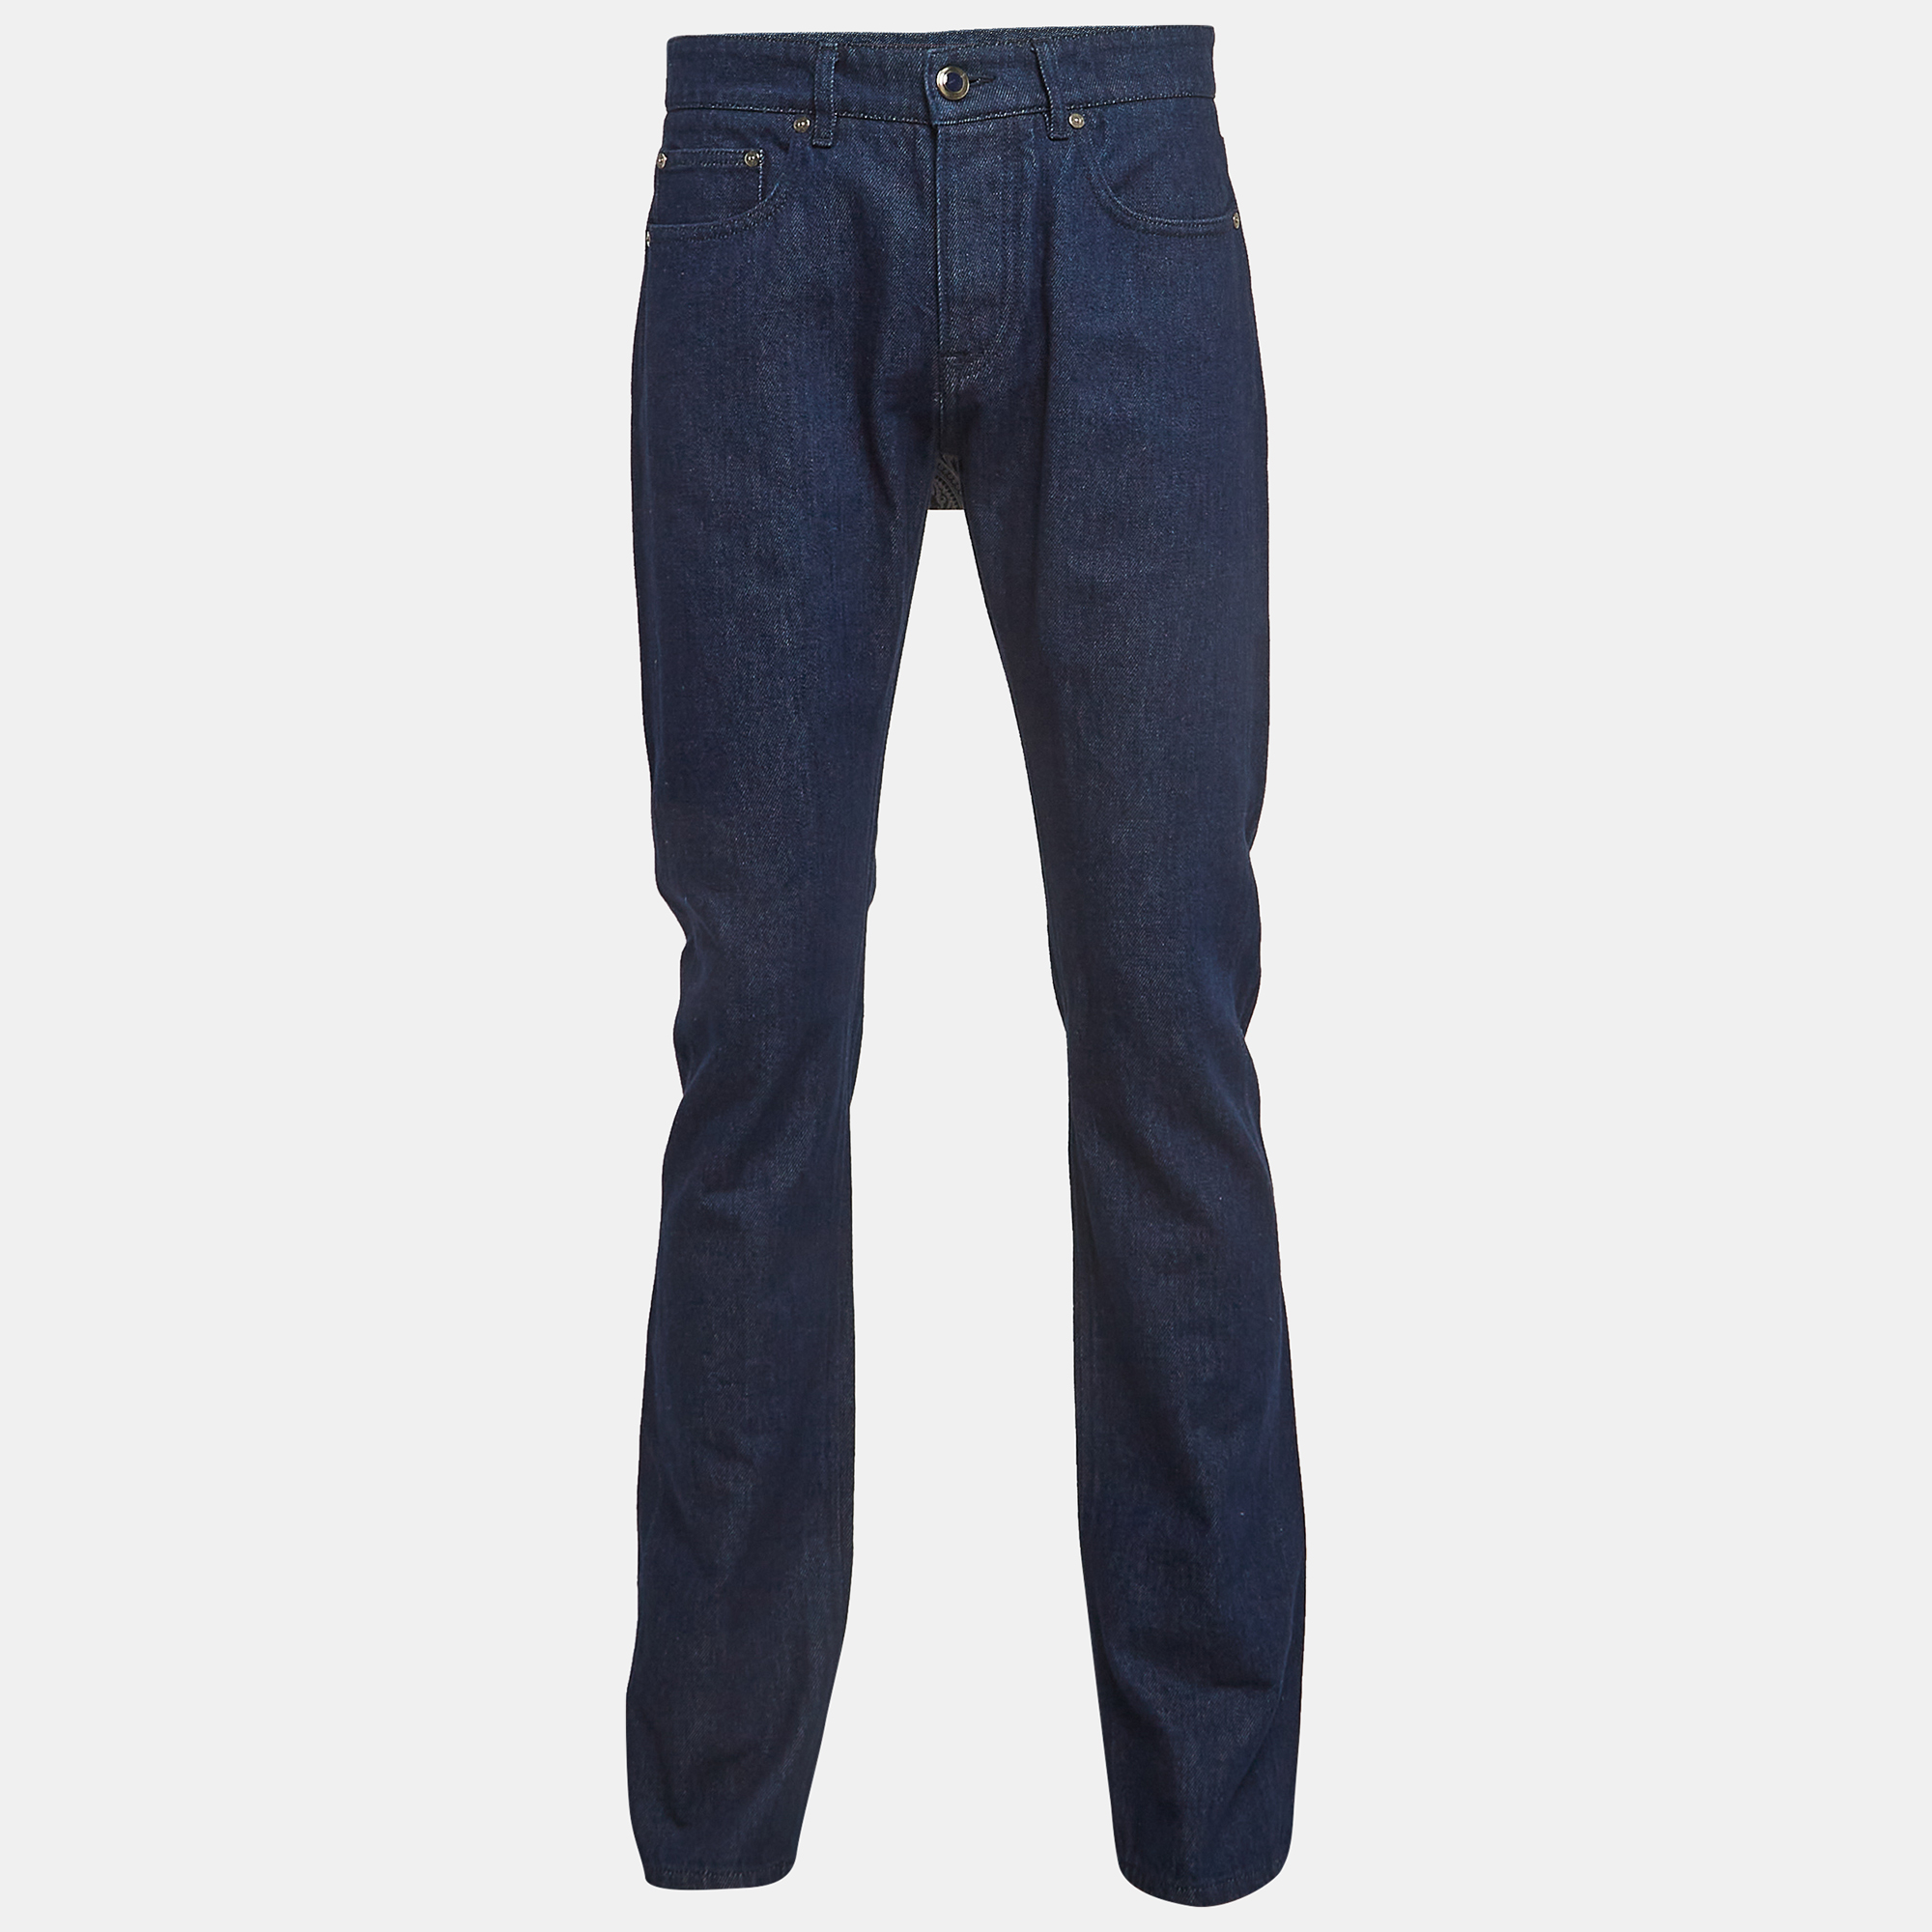 

Etro Navy Blue Denim Regular Fit Jeans  Waist 32